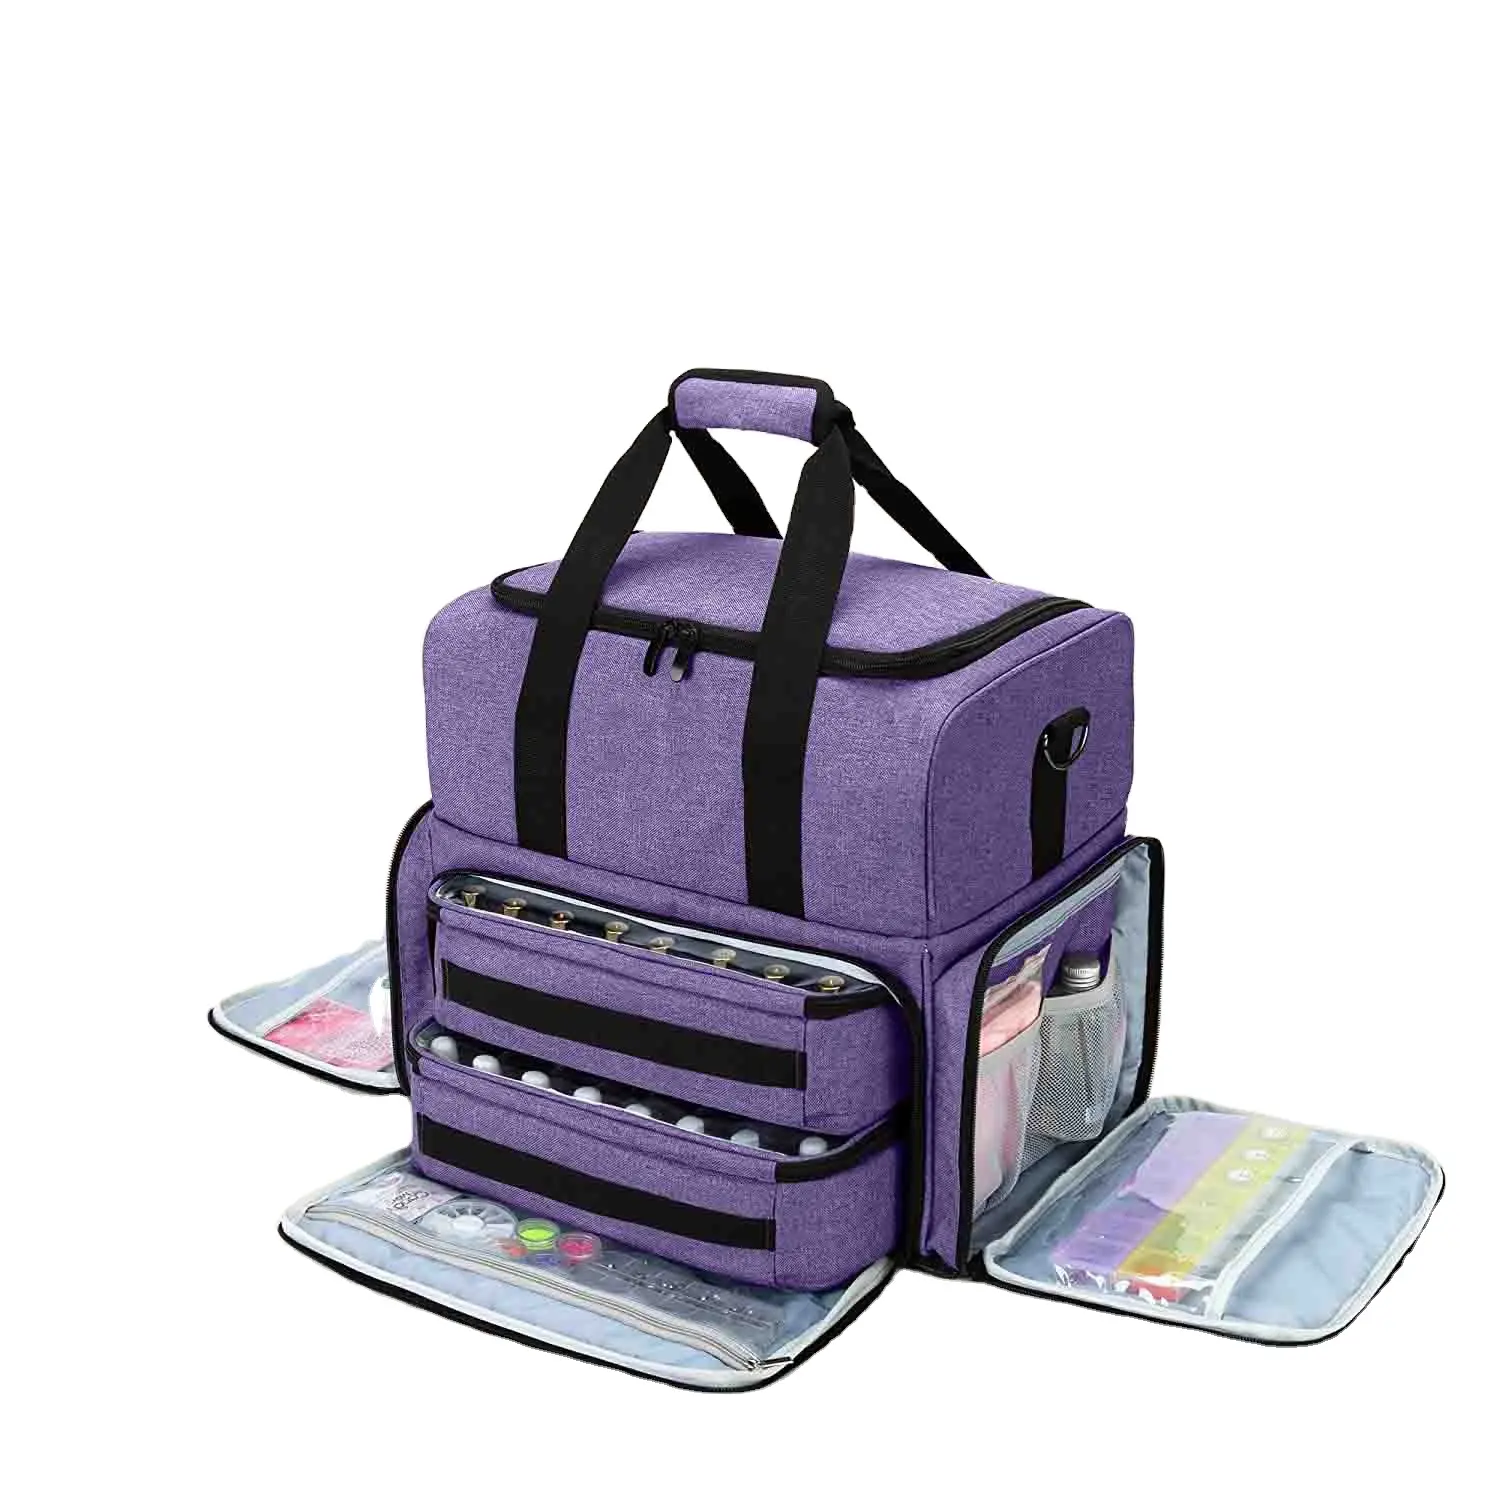 हटाने योग्य पाउच के साथ बड़े ट्रैवल मेकअप बैग के साथ 3 आंतरिक हटाने योग्य पाउच के साथ बड़े ट्रैवल मेकअप बैग